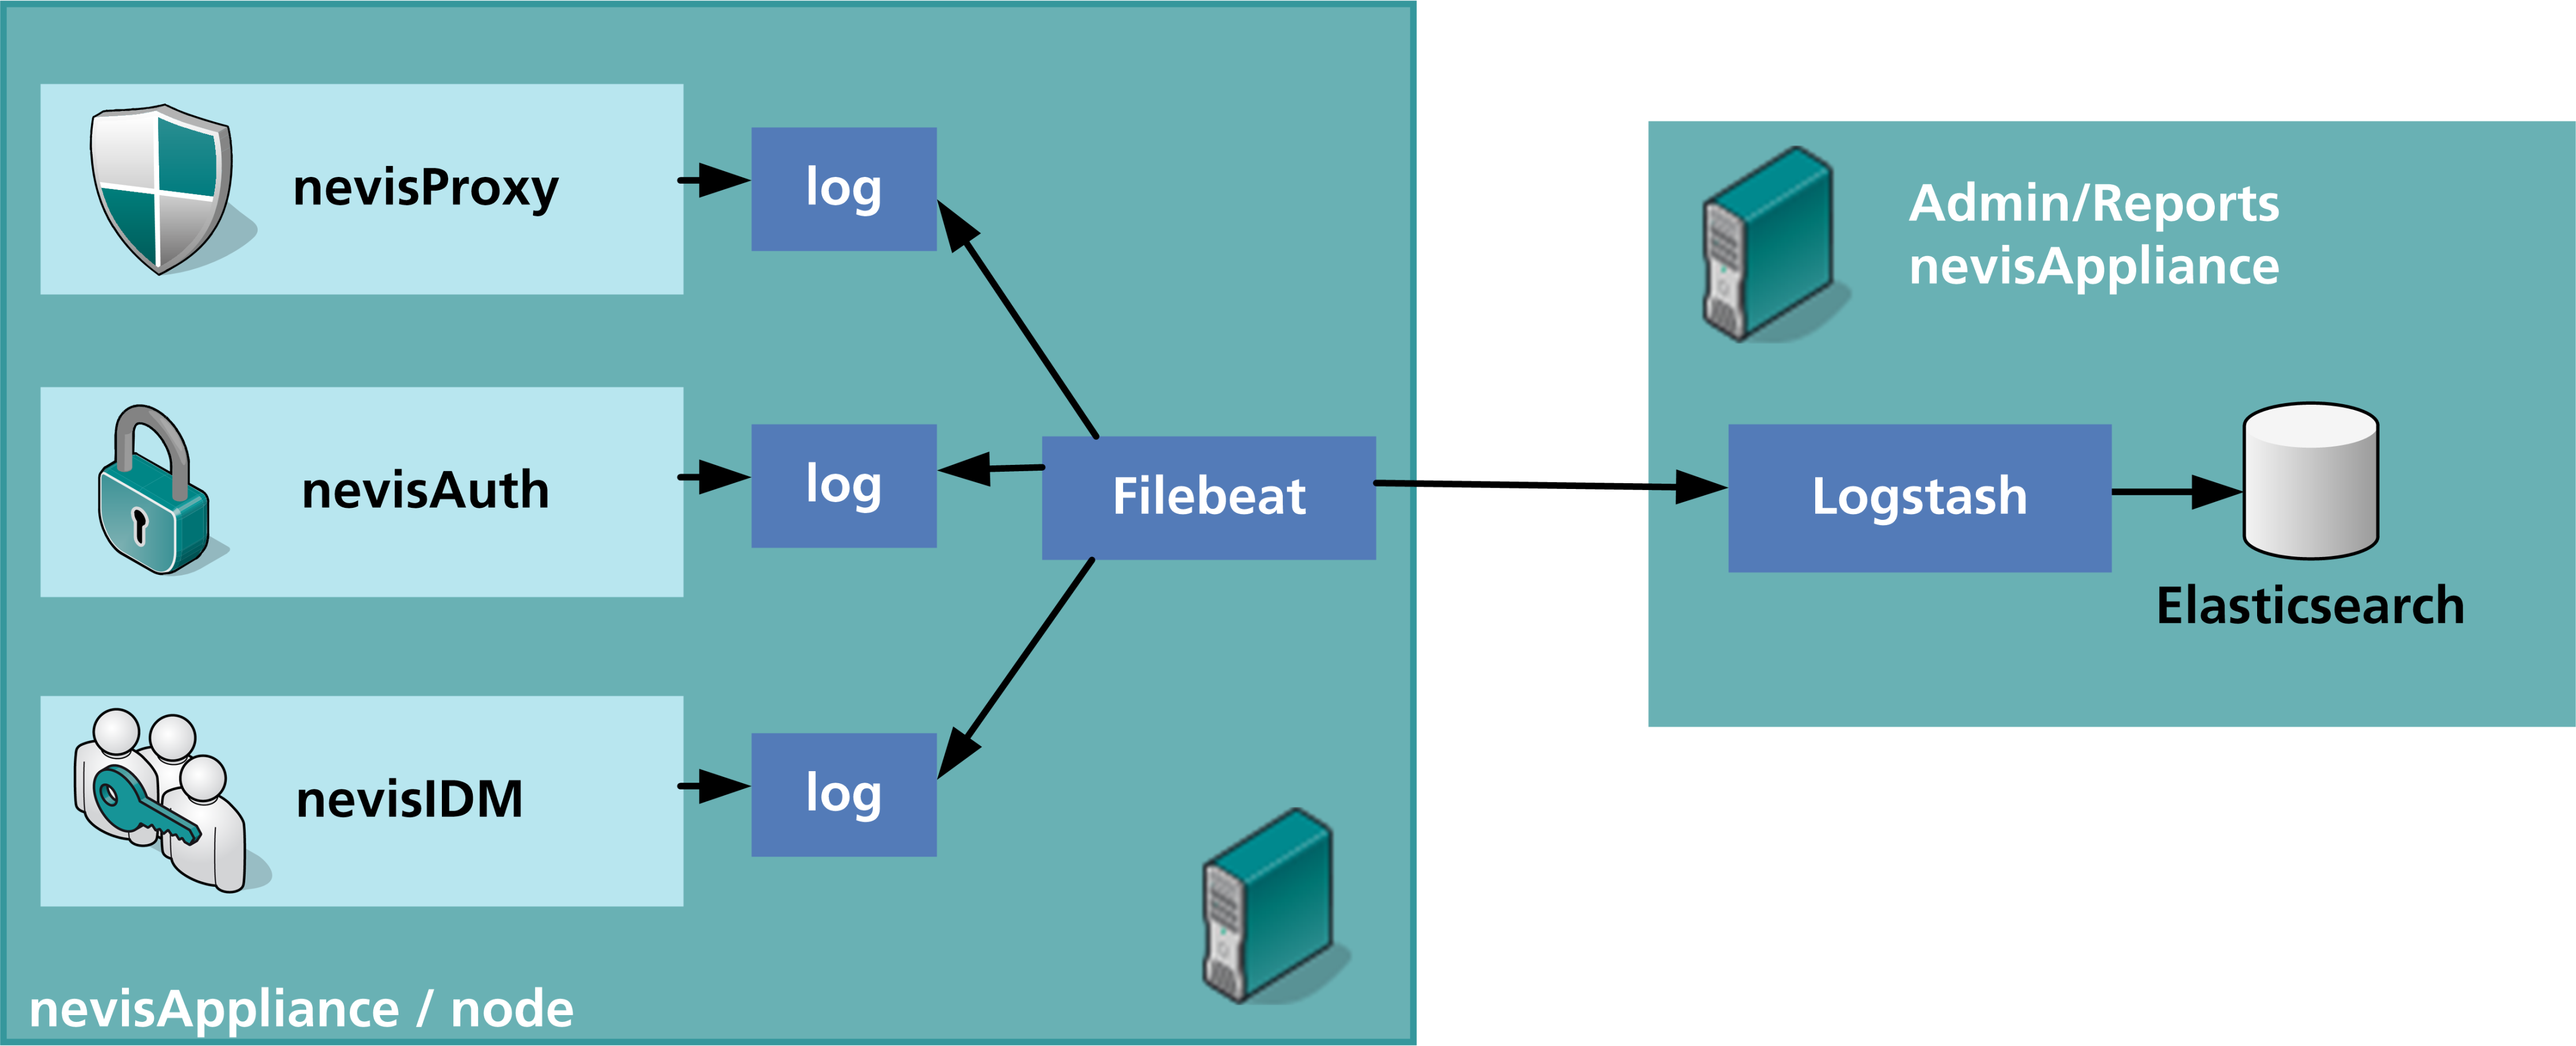 Forwarding logs using Filebeat